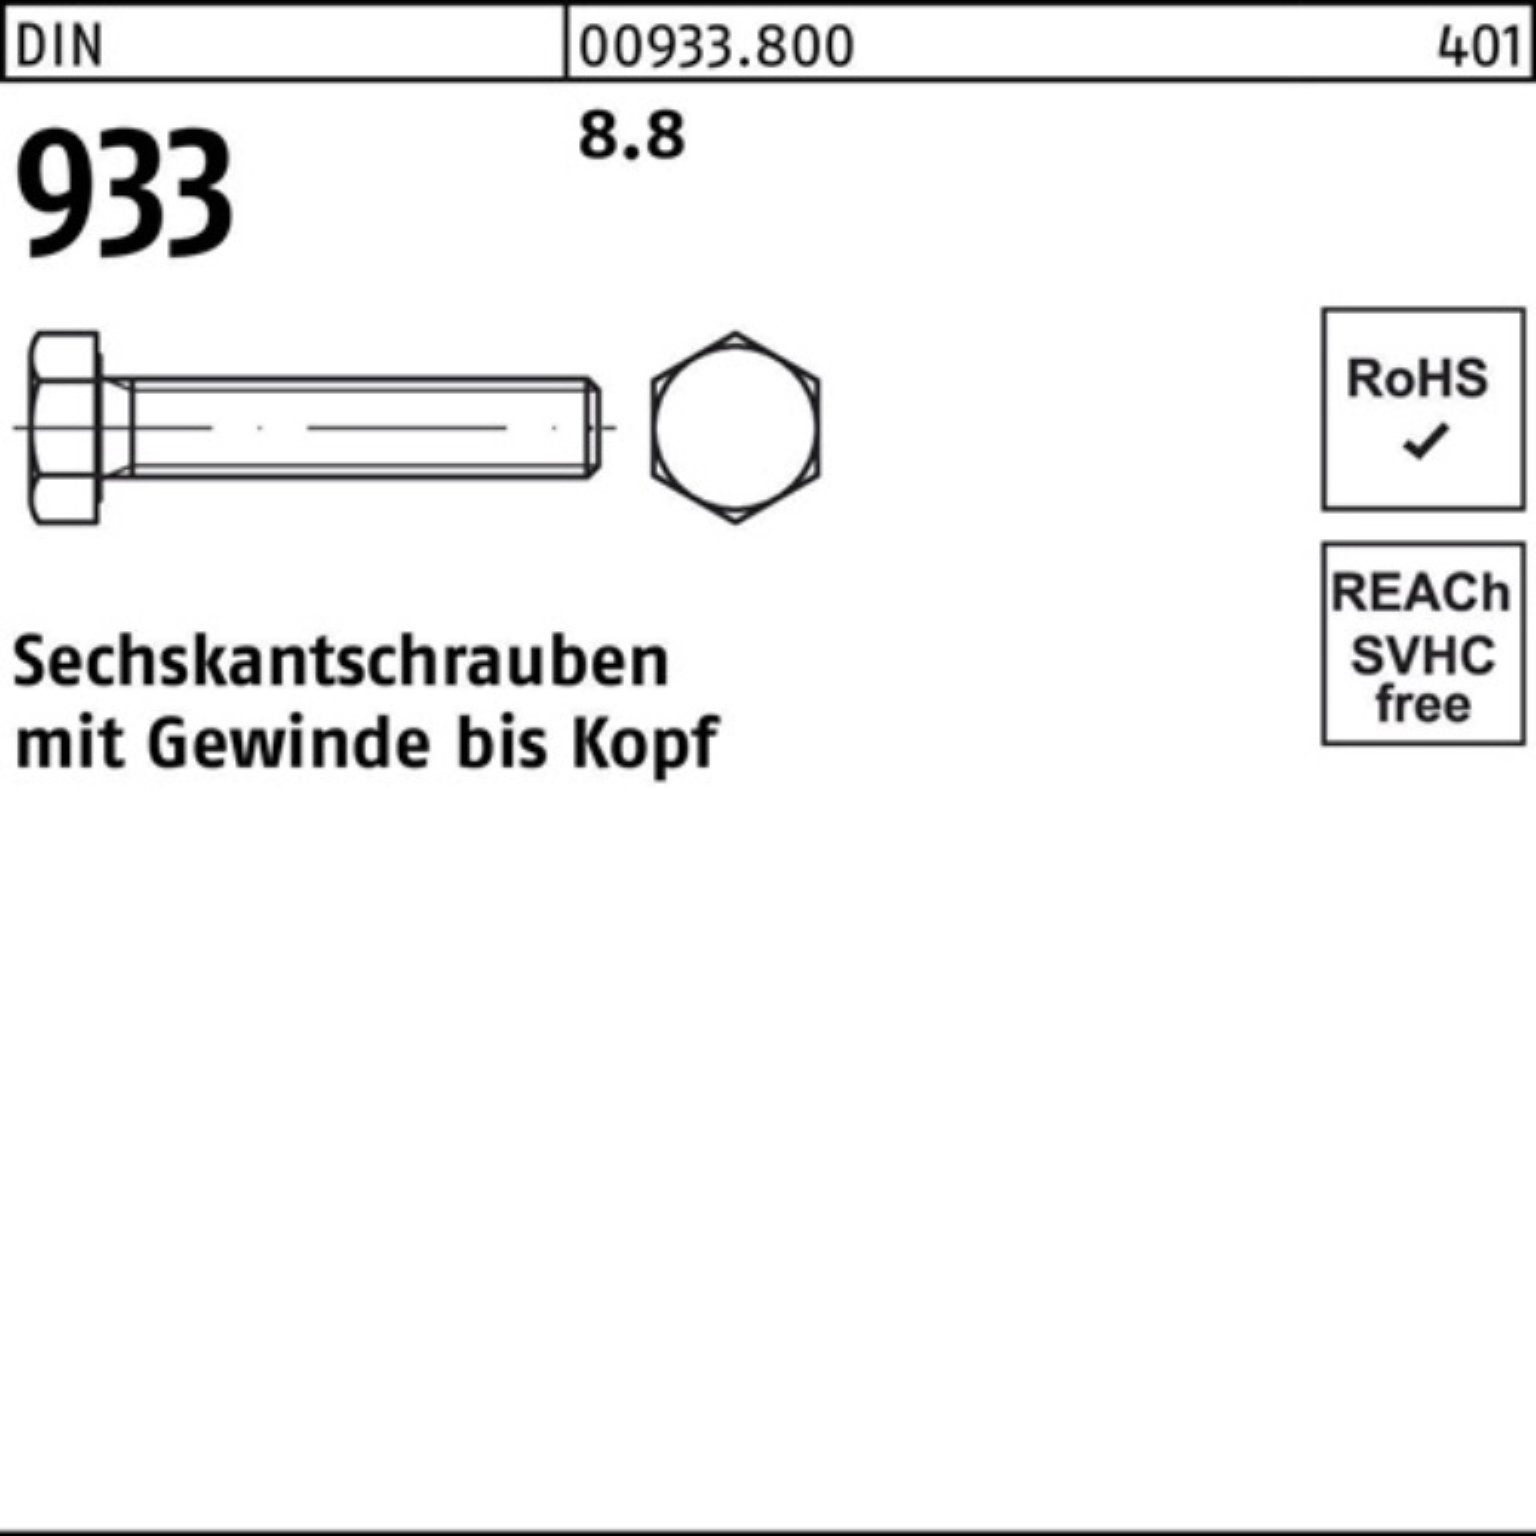 Reyher Sechskantschraube 933 933 500 500er Sechskantschraube 18 DIN 8.8 VG DIN M3x Pack Stück